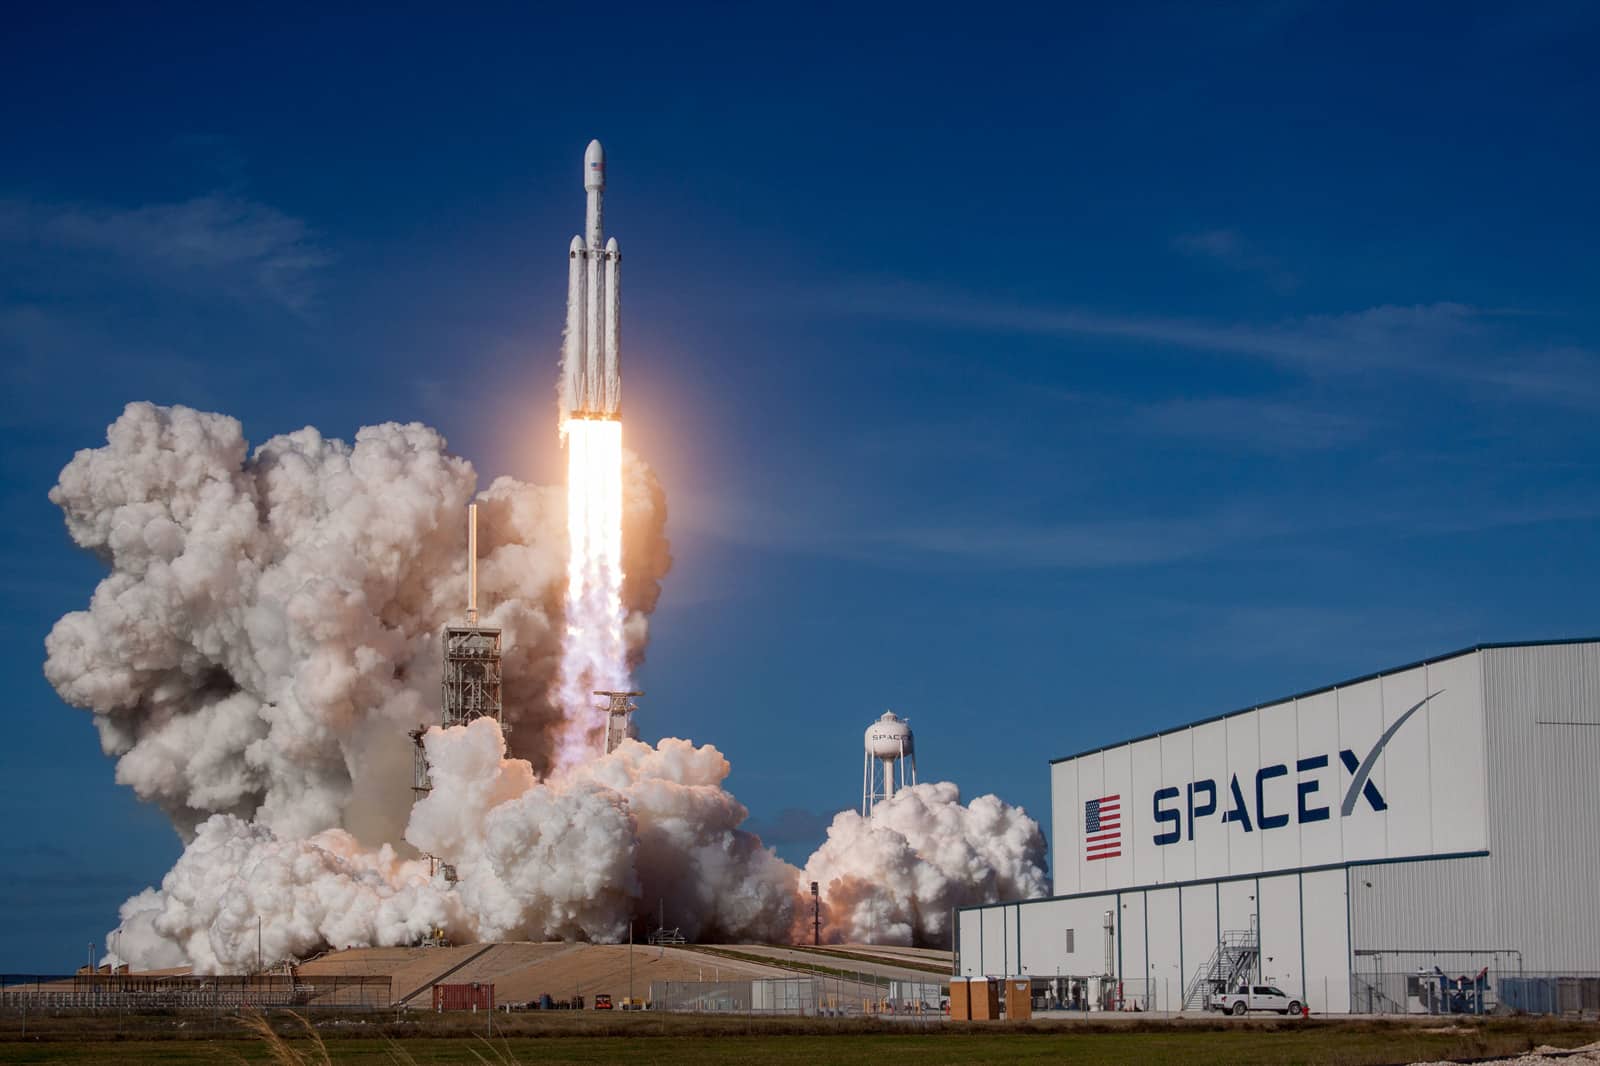 La fusée Falcon Heavy en plein lancement.